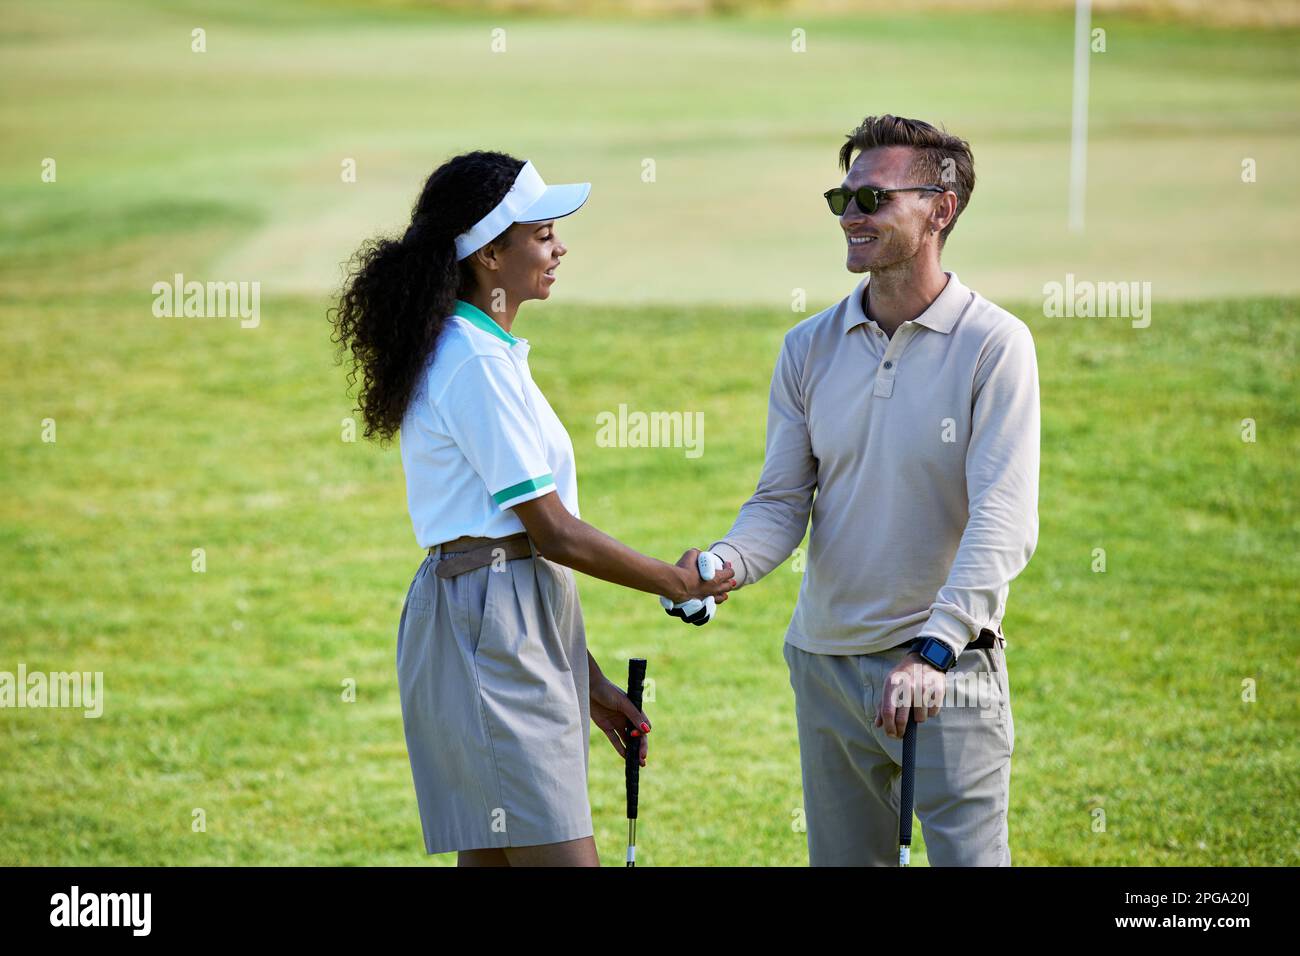 Porträt von zwei Golfspielern, die sich nach einem Spiel die Hände schütteln Stockfoto